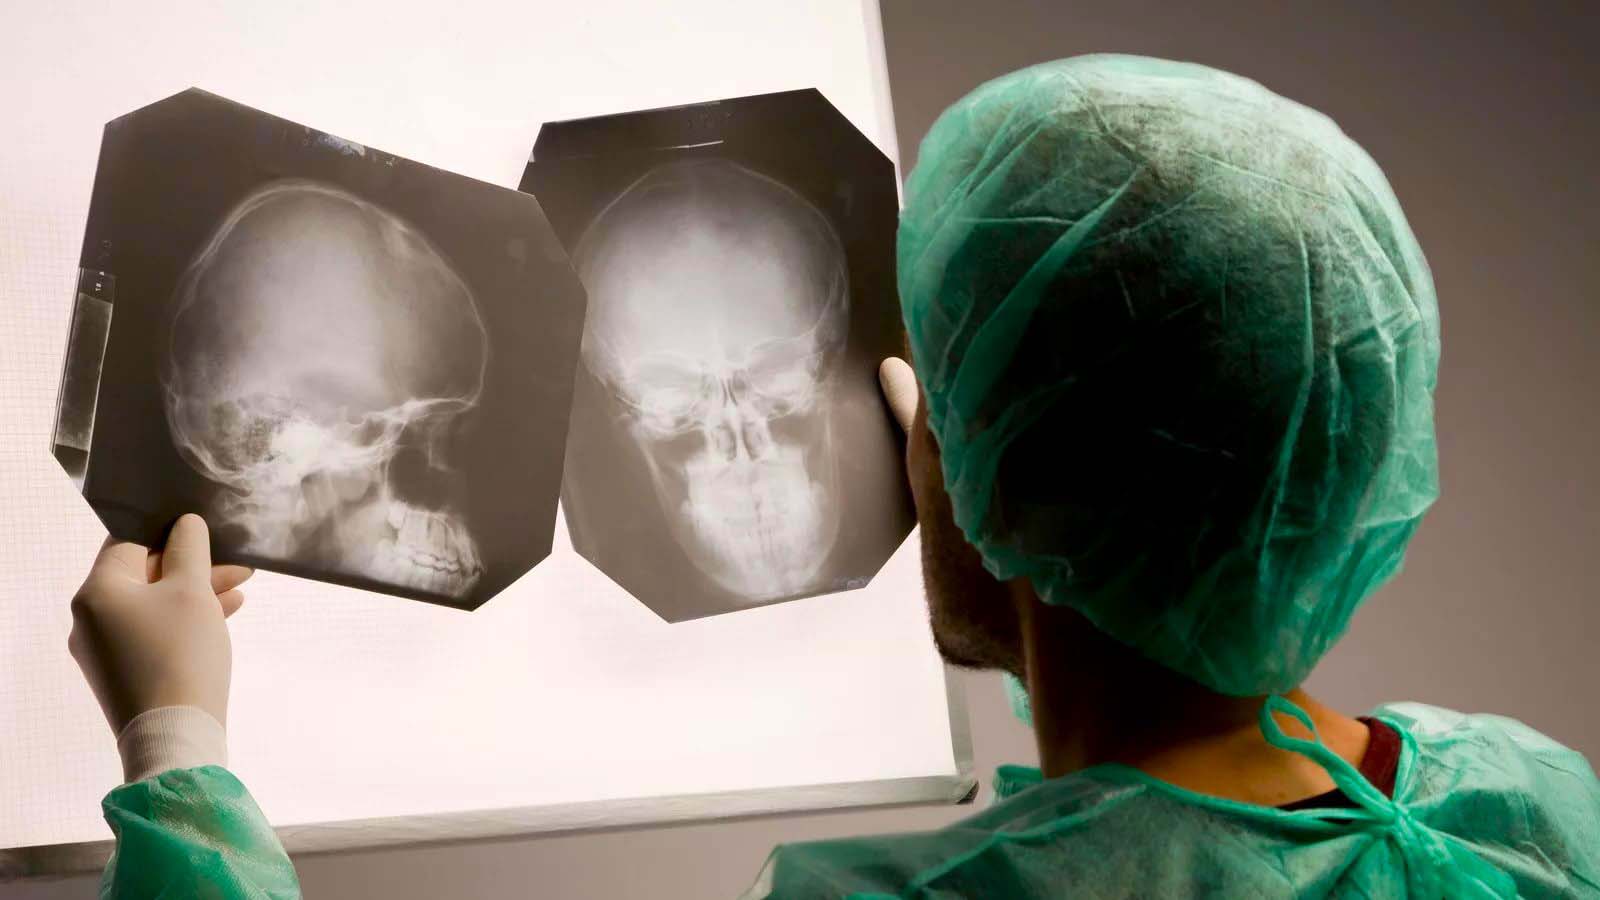 Ответы к тестам НМО: "Лечение травматических повреждений костей лицевого скелета"